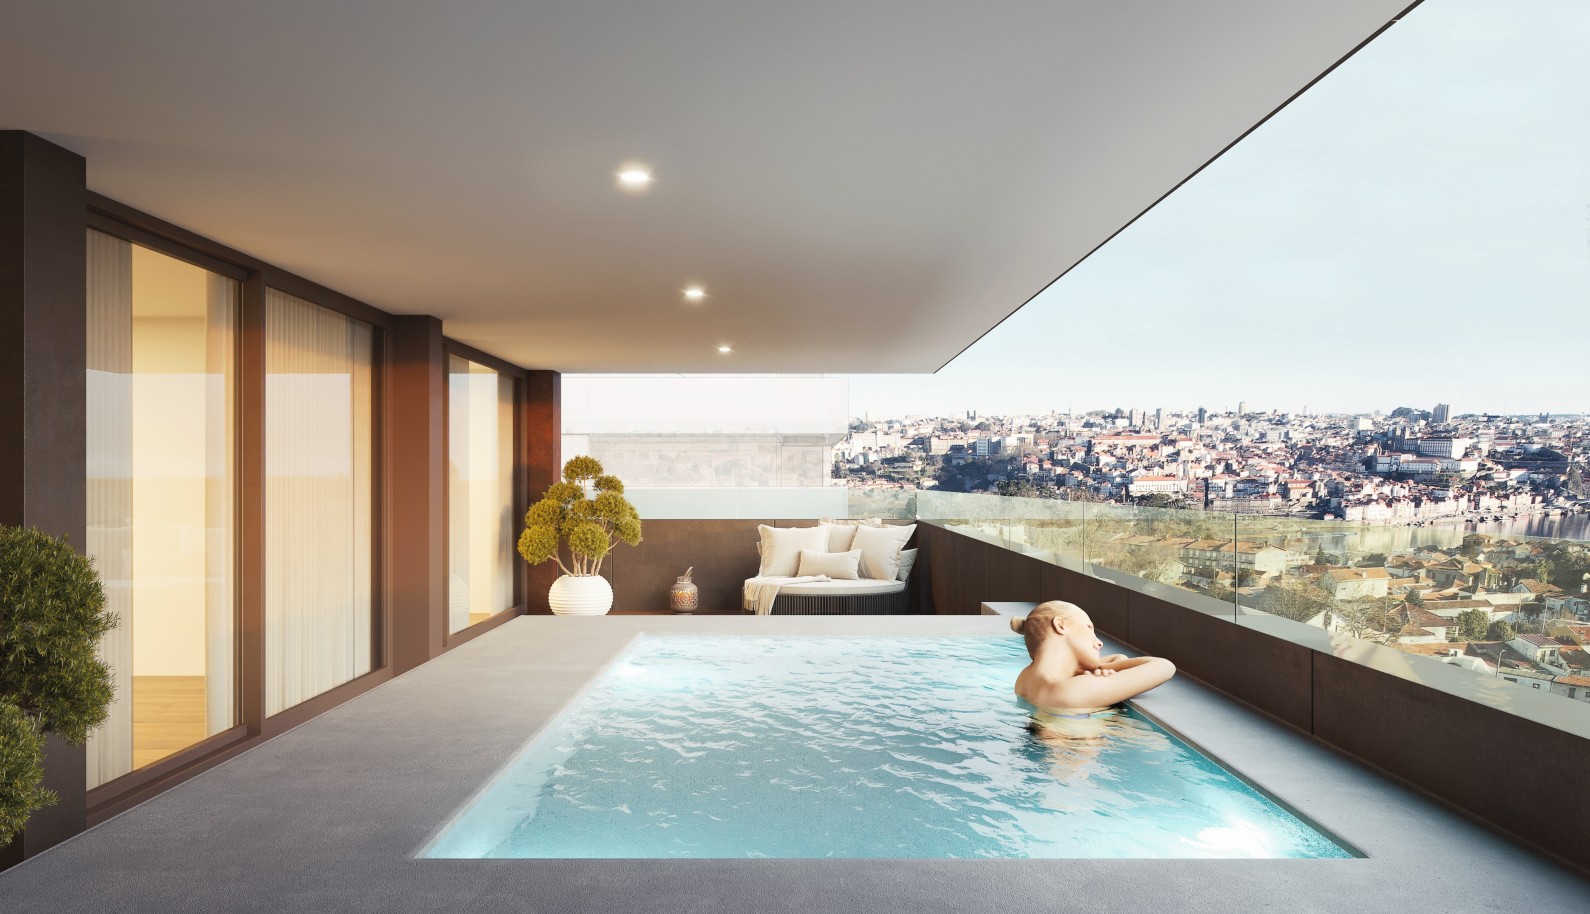 Apartamento novo com piscina, para venda, em V. N. Gaia, Porto, Portugal_236095